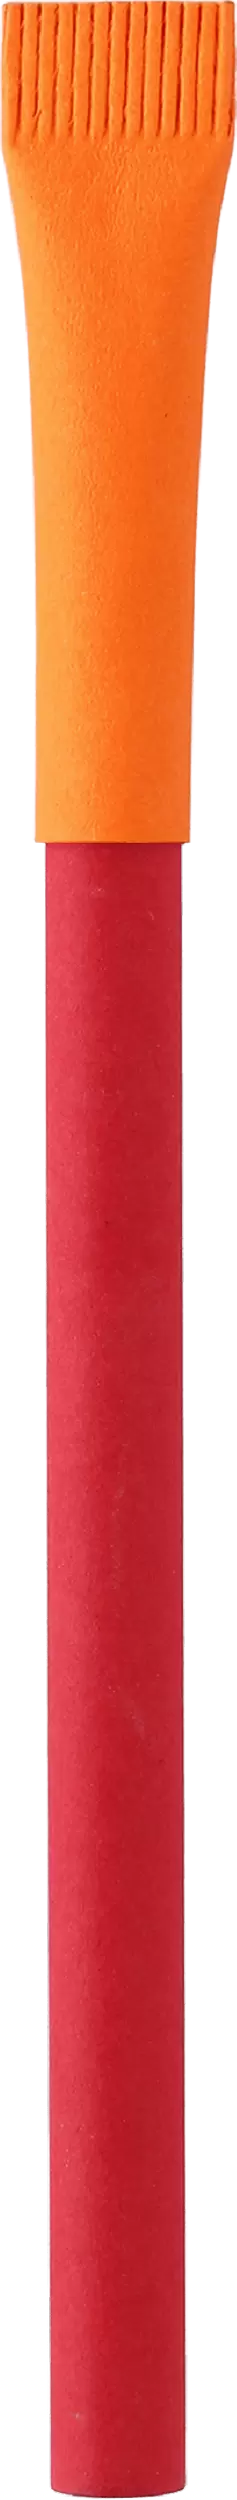 Ручка KRAFT MIX Красная с оранжевым 3011-03-05